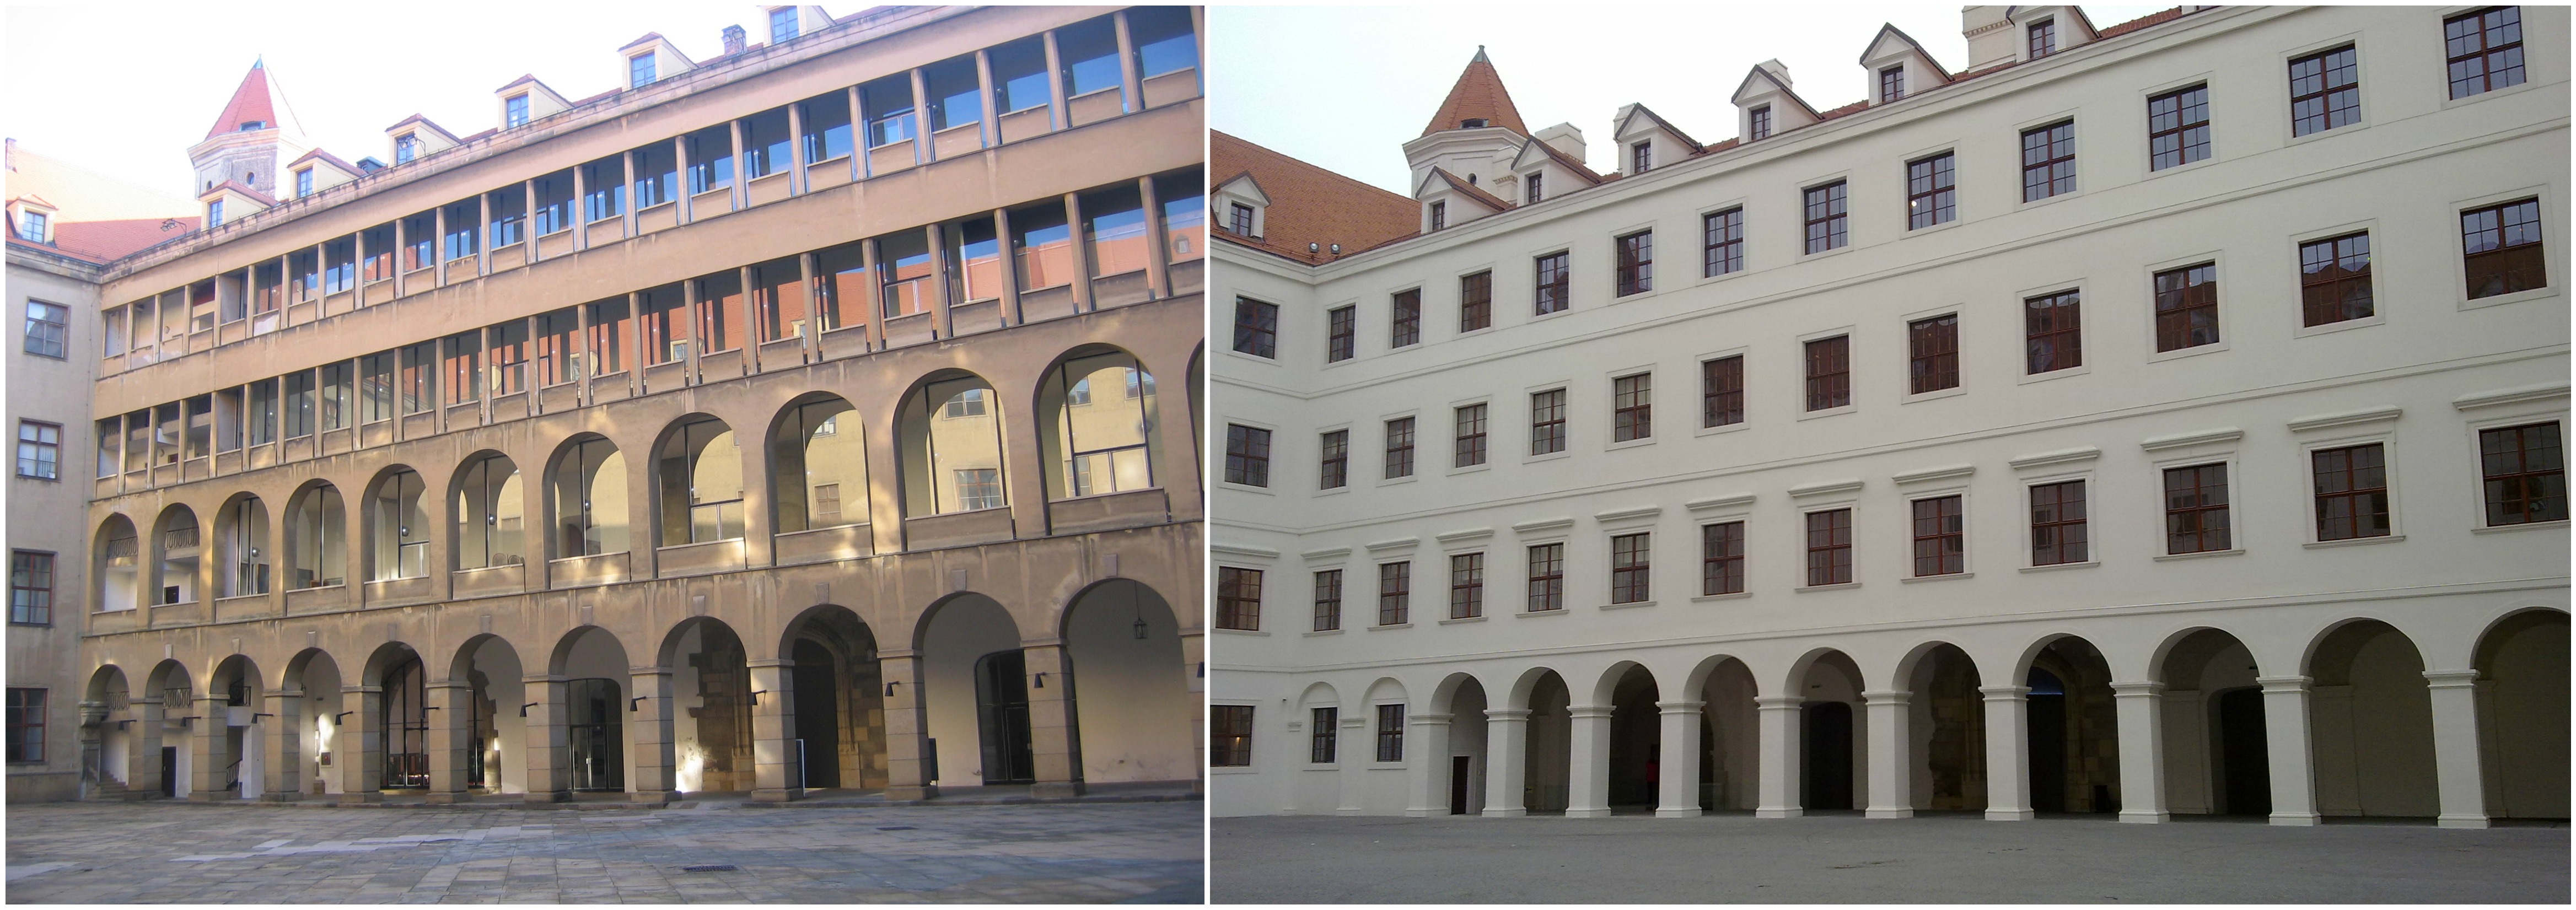 ádvorie Bratislavského hradu obnovené pôvodne s arkádami a ako vyzerá dnes, keď arkády nahradili oknami, aké tam boli pôvodne. 